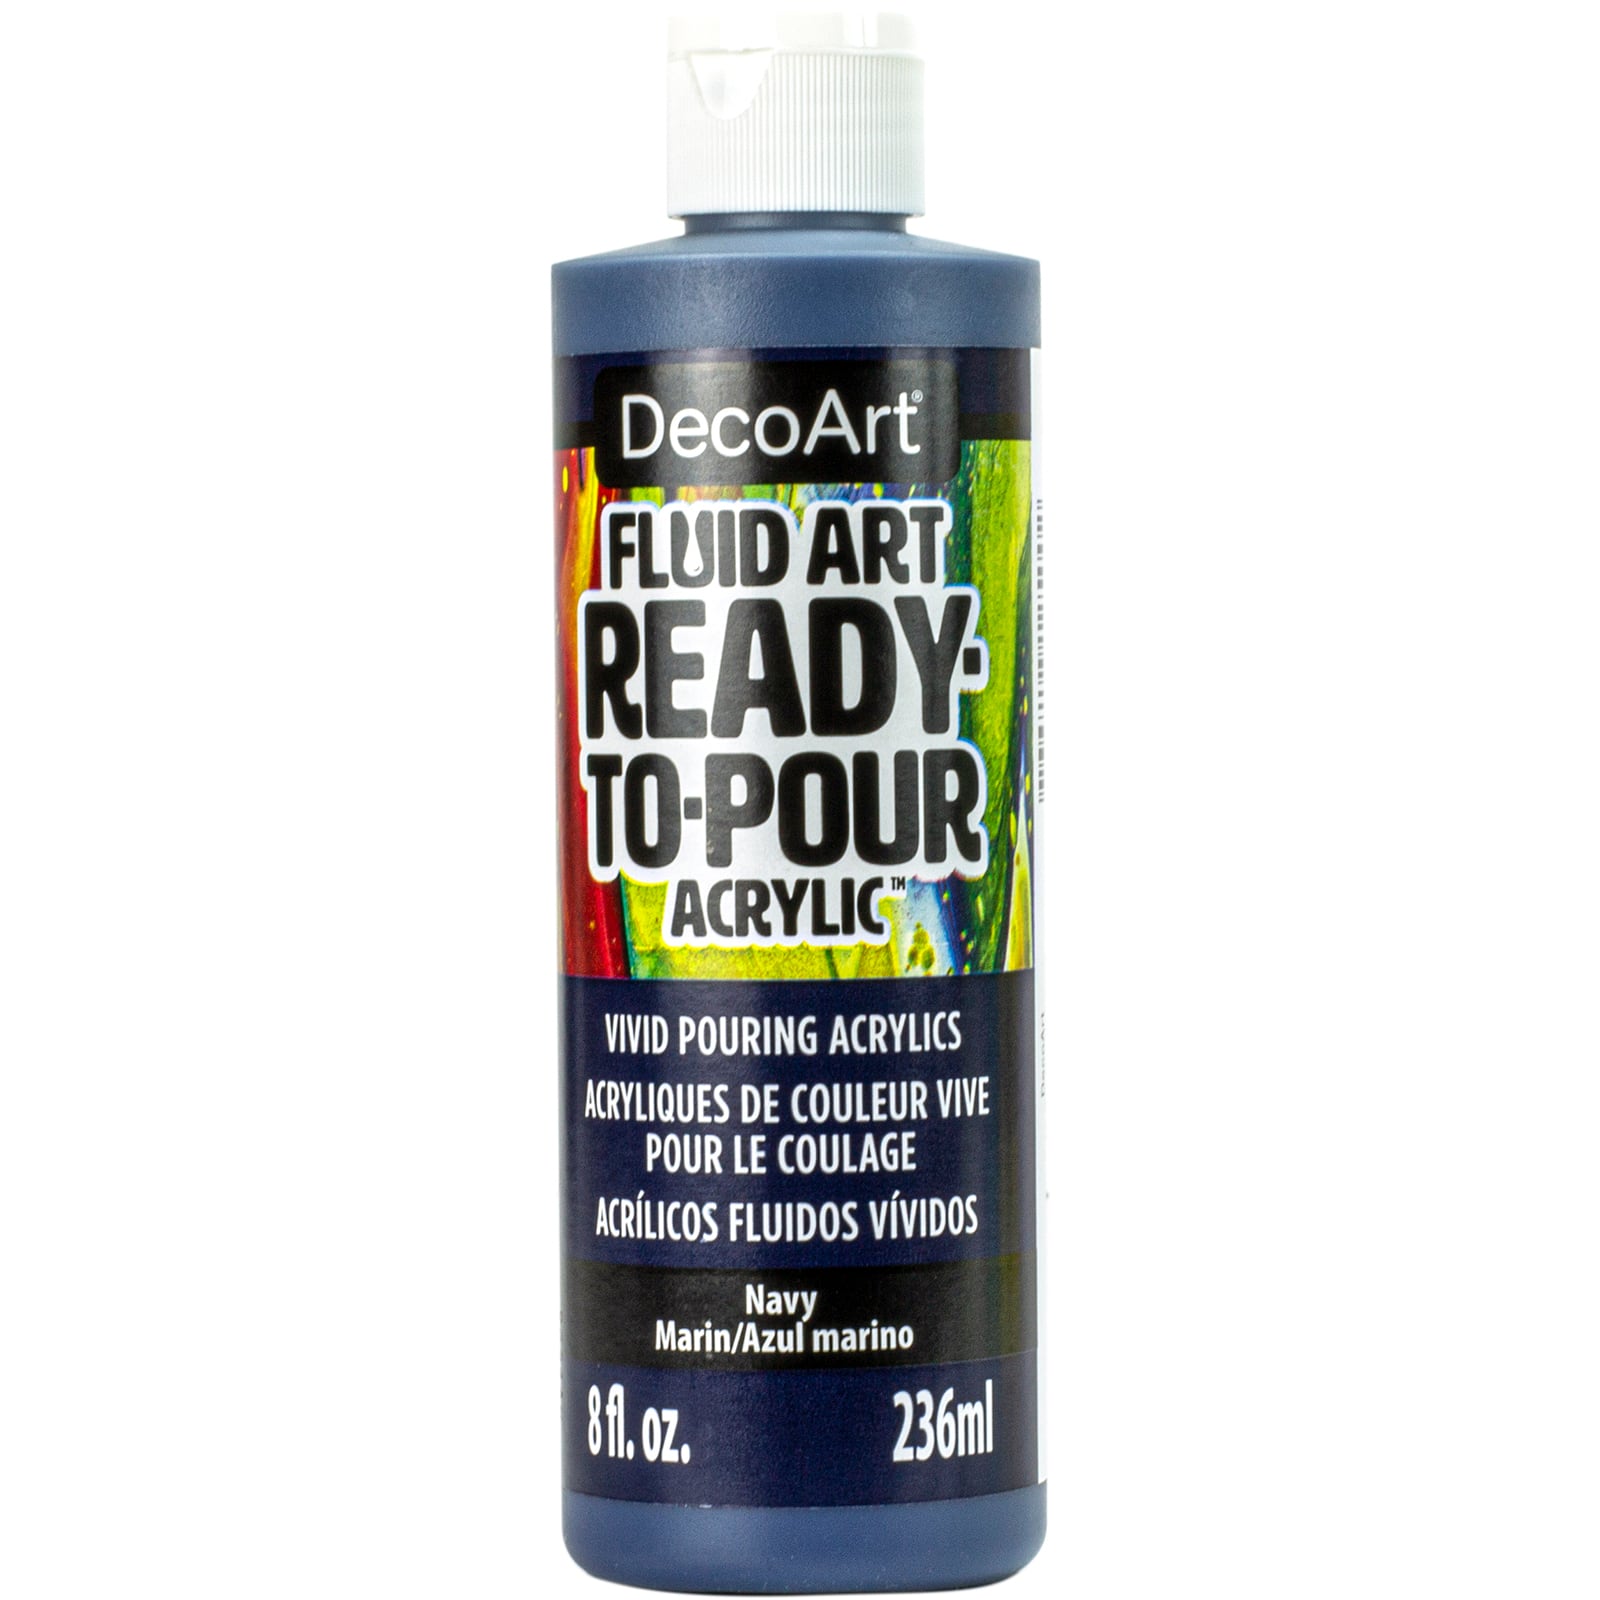 Decoart FluidArt Ready to Pour Acrylic Paint 8oz - Navy